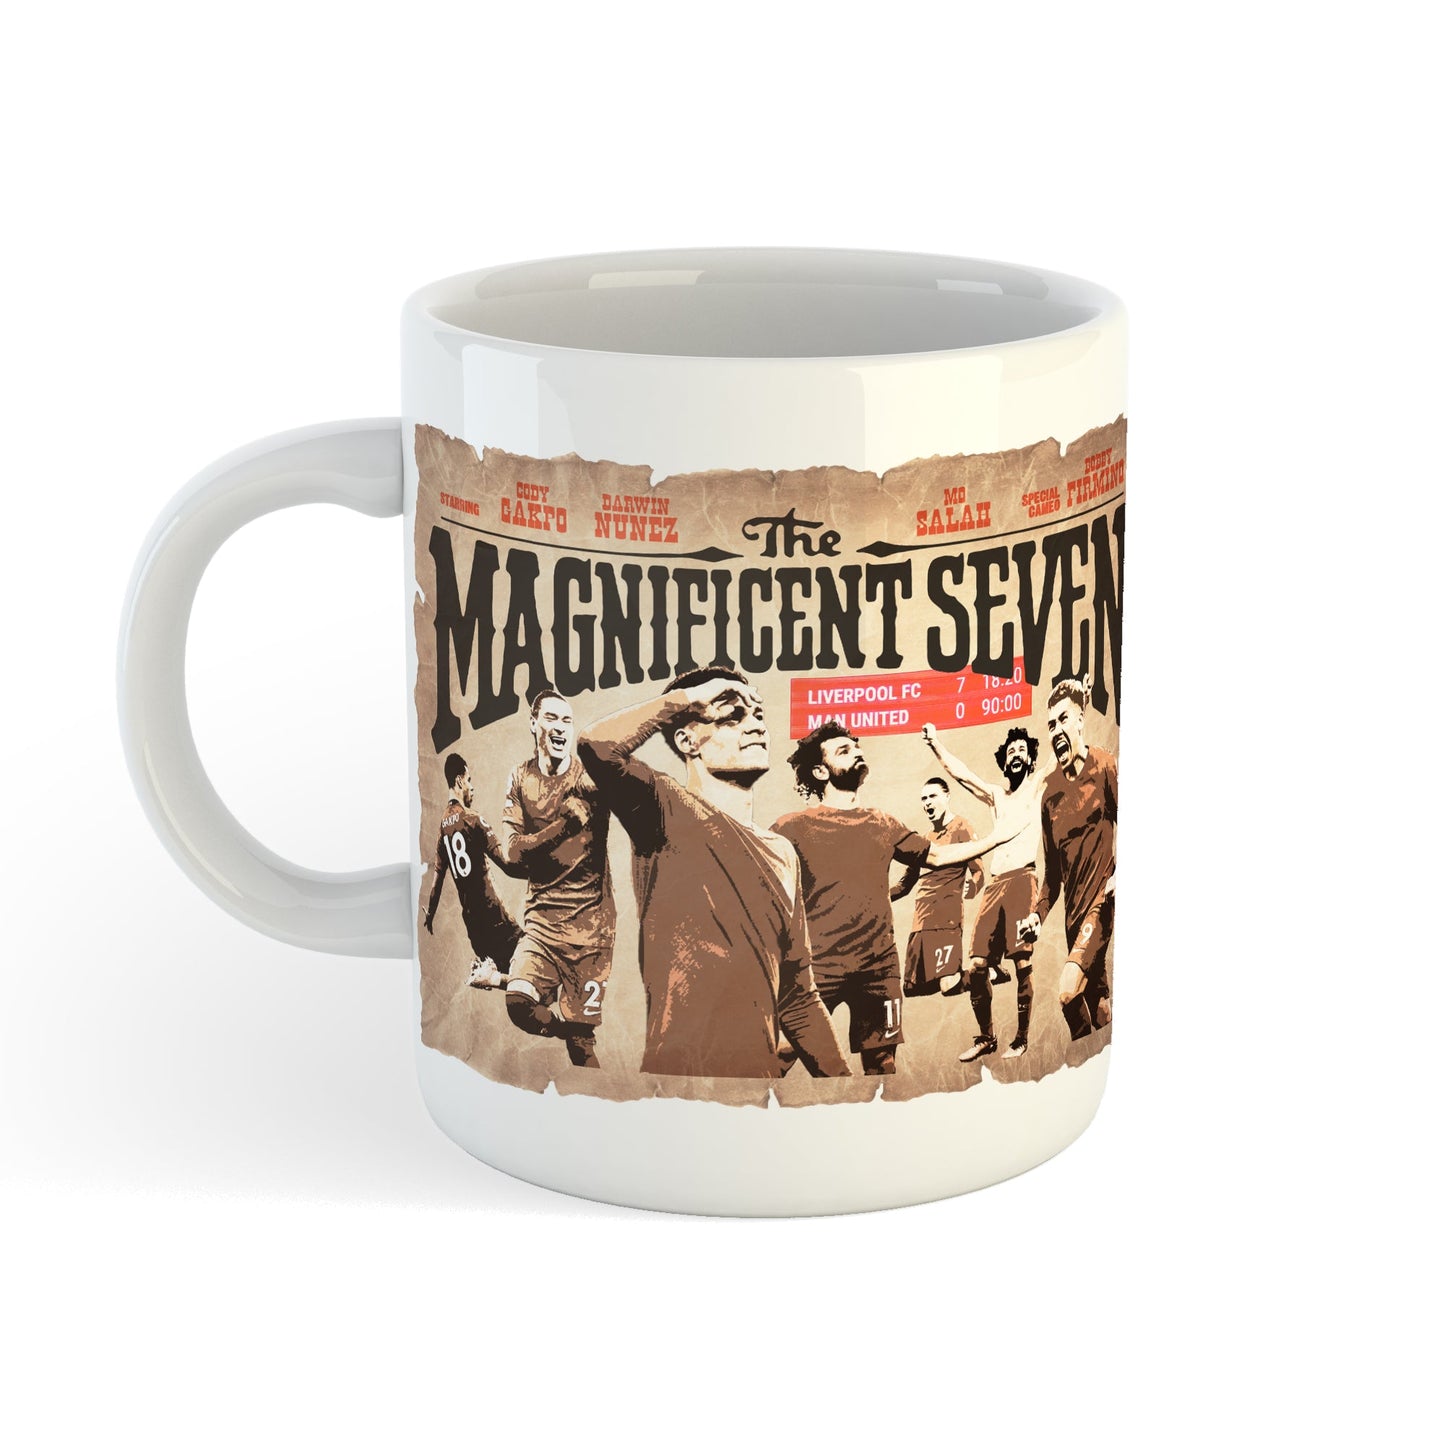 Magnificent Seven Mug